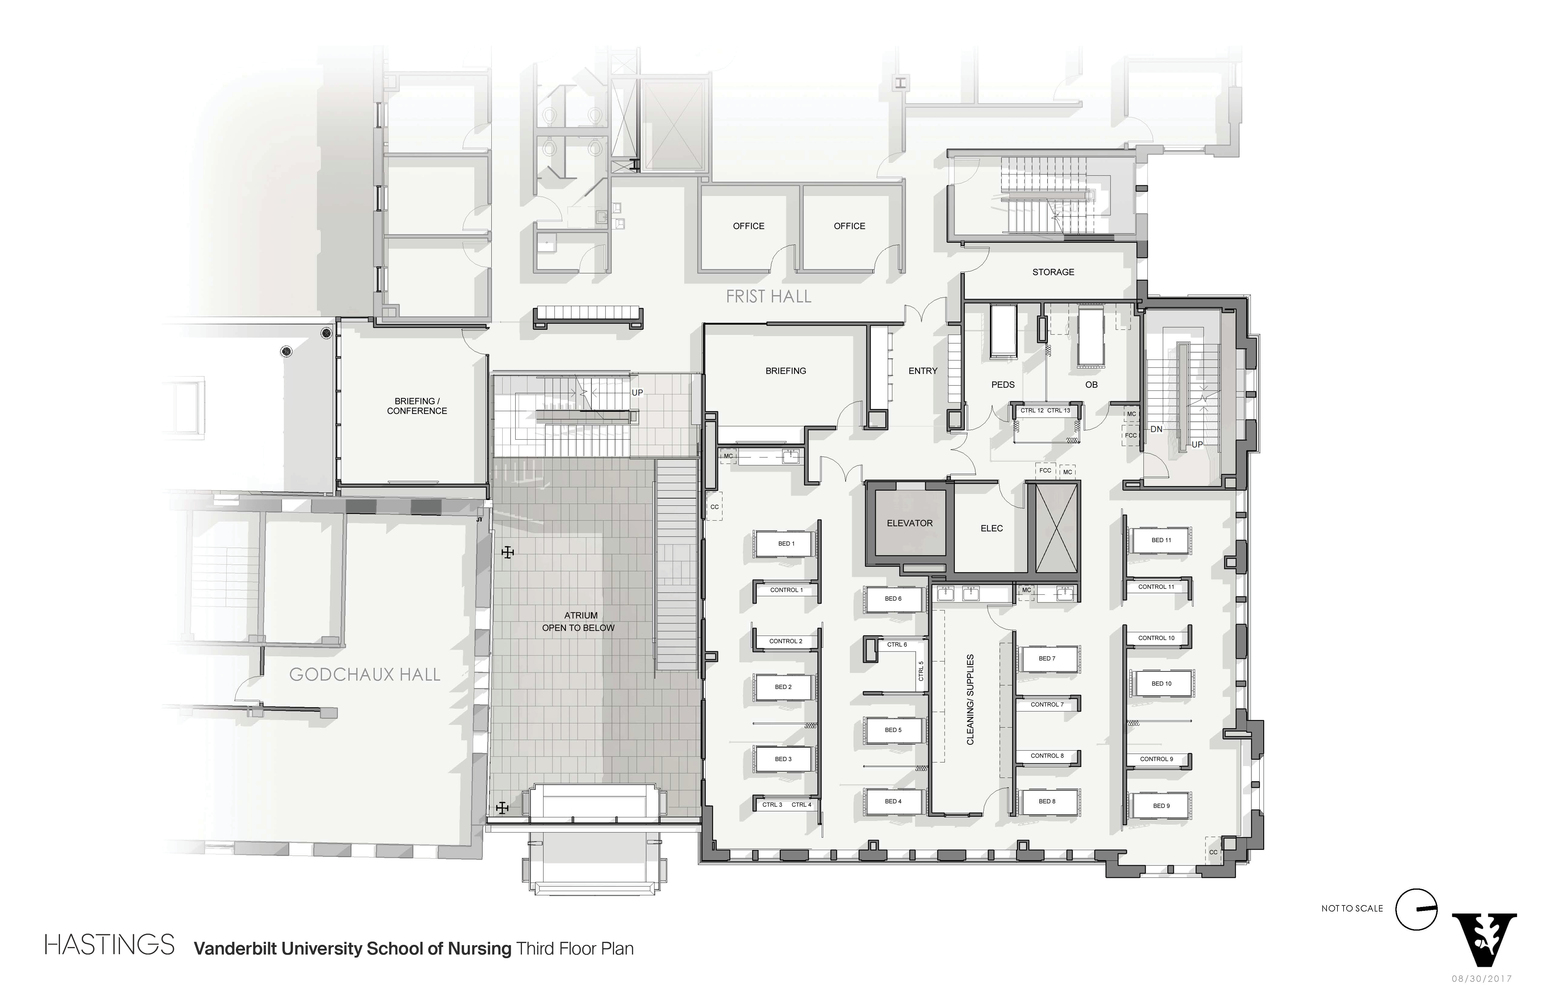 03_Vanderbilt_University_School_of_Nursing_Third_Floor_Plan.jpg